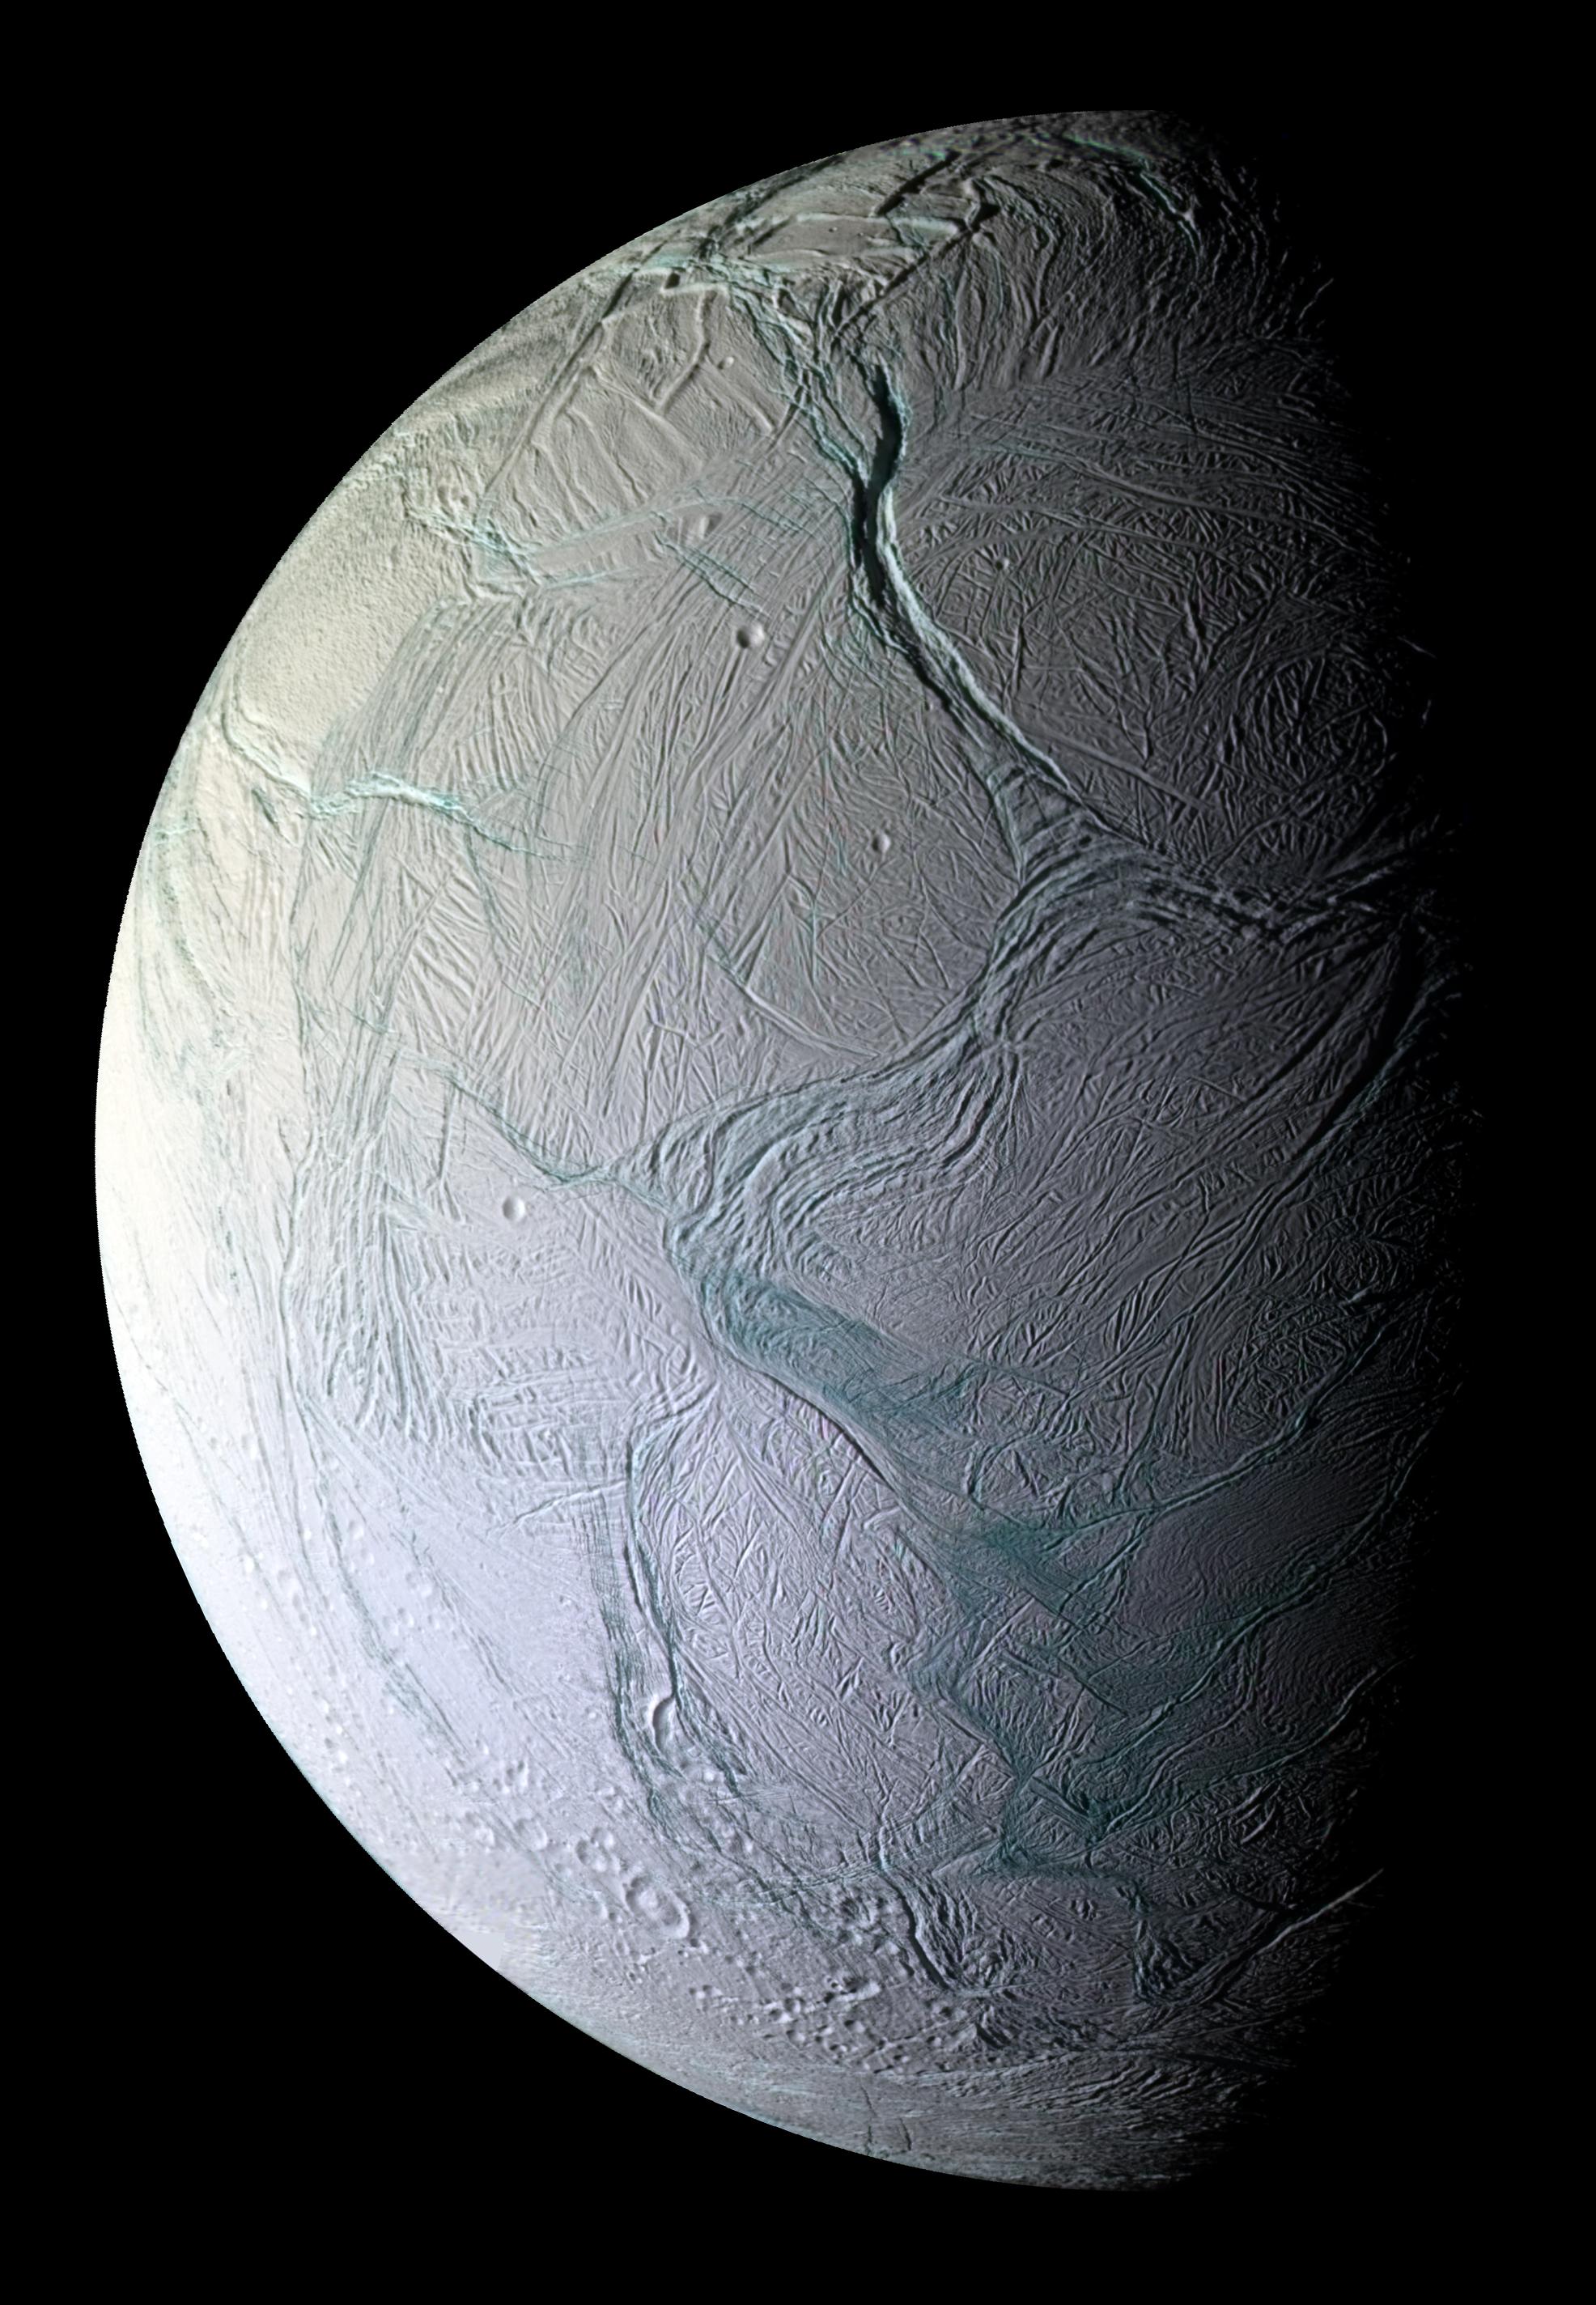 Labtayt Sulci on Saturns Enceladus